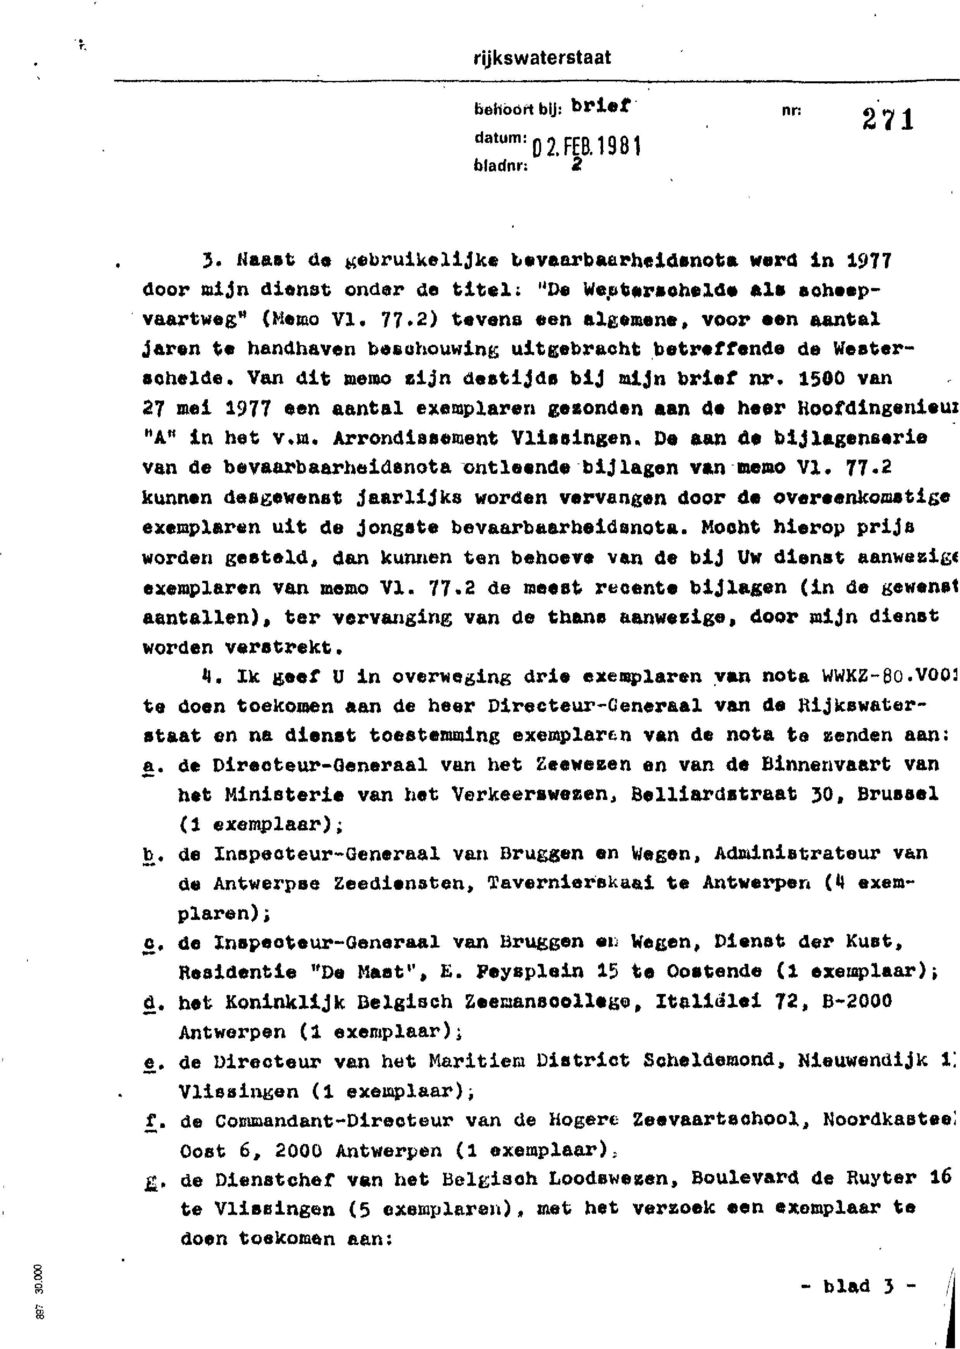 1500 van 27 me1 1977 een aantal exemplaren geconden aan äo heer Hoofdingenieur "An in het v.m. Arrondiaaement Vlirsingen.